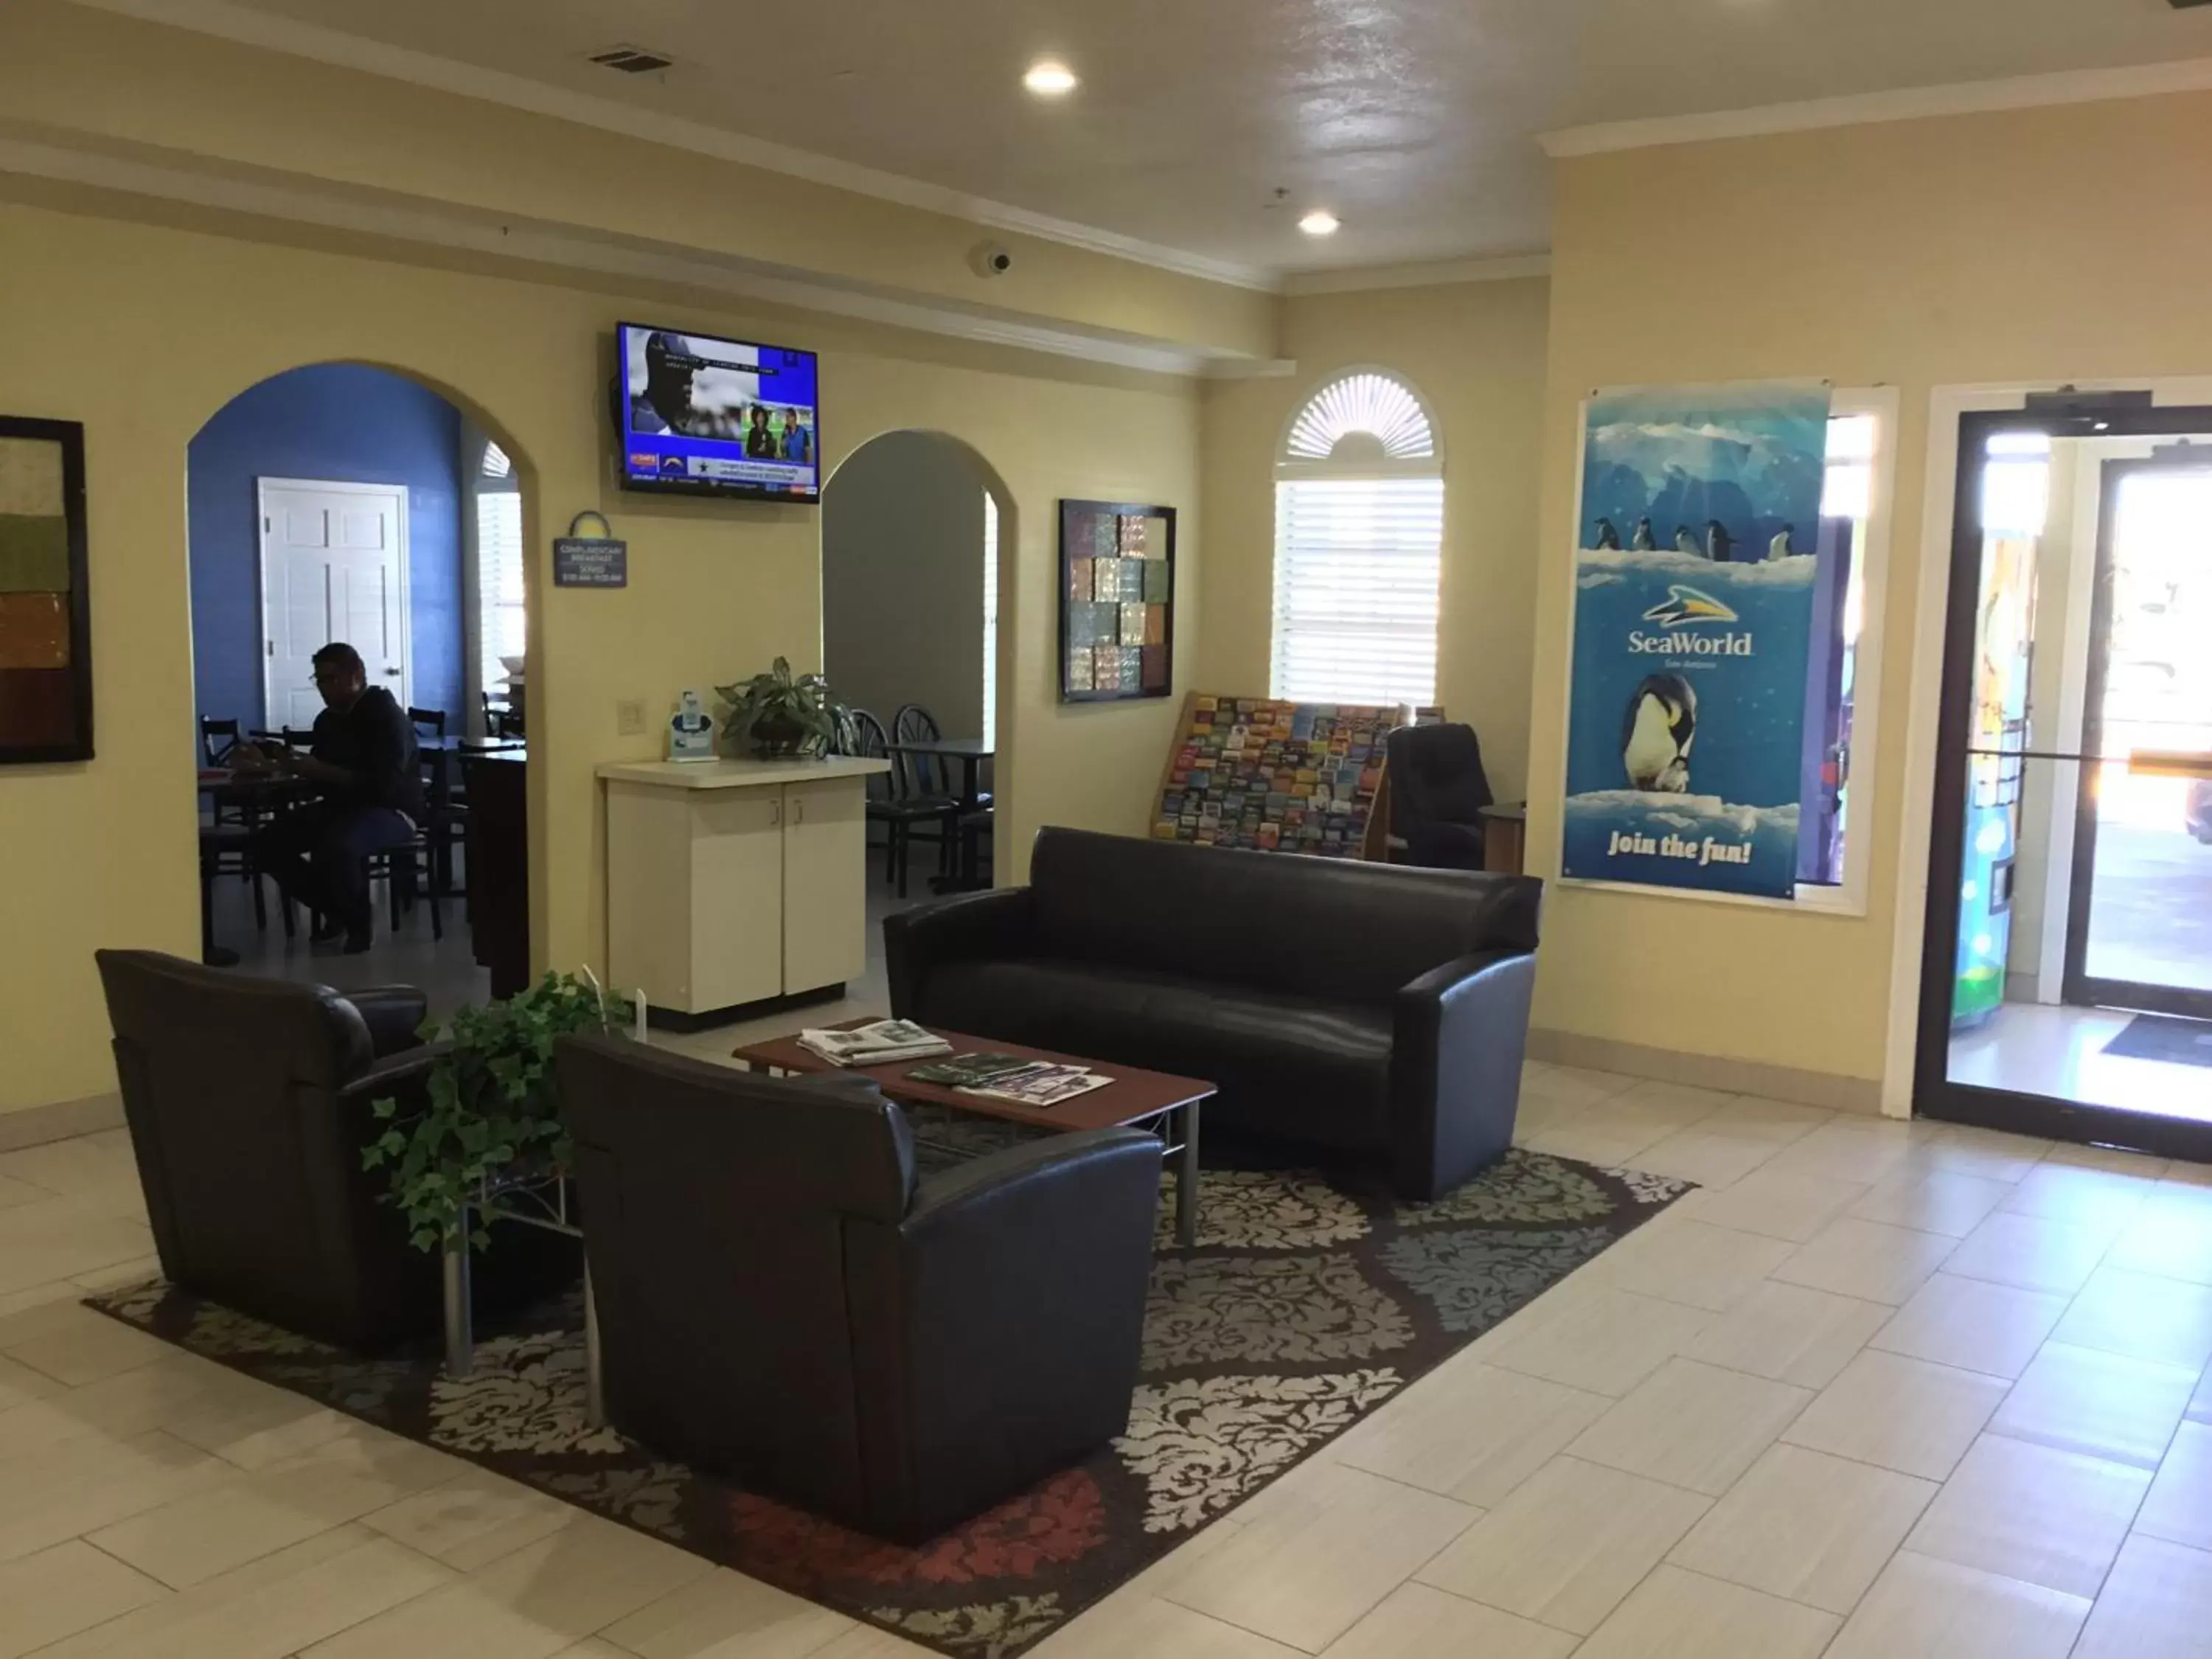 Lobby or reception, Lobby/Reception in Days Inn by Wyndham San Antonio Northwest/Seaworld